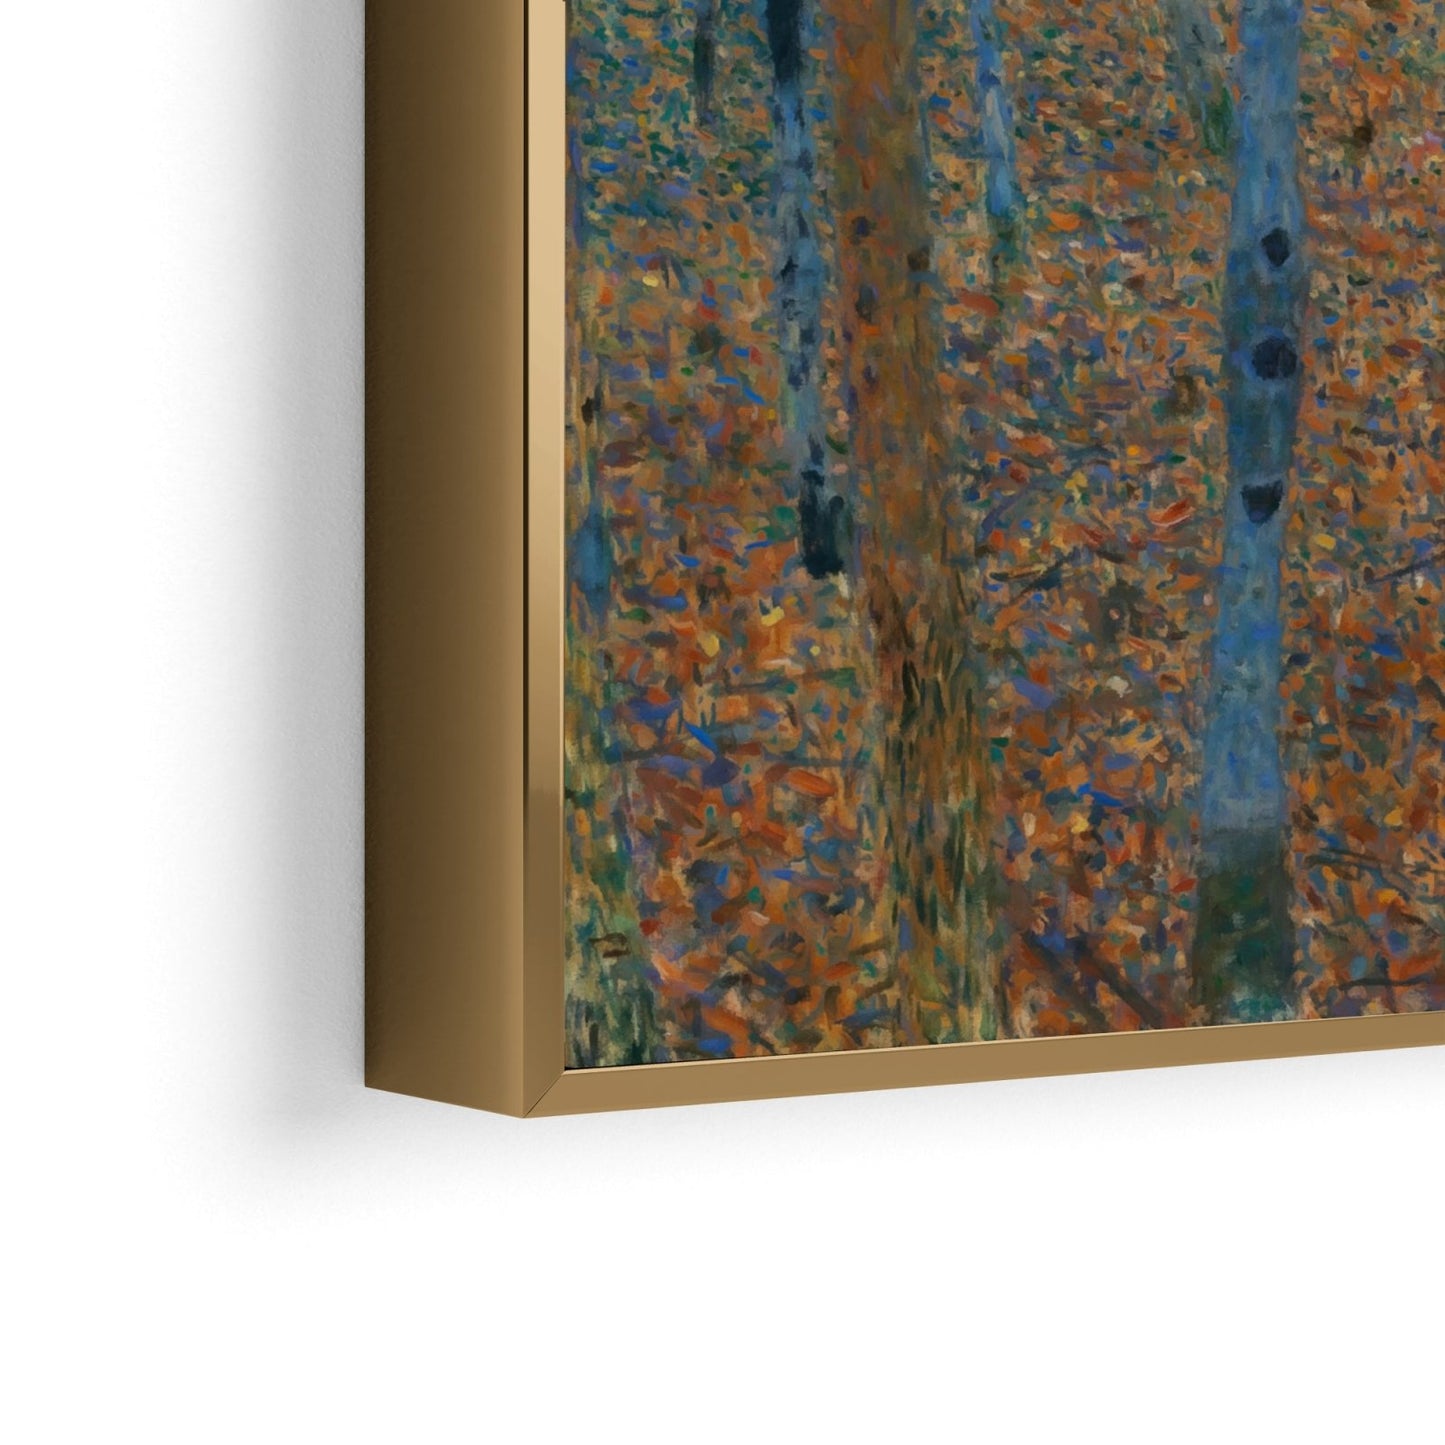 Birkenwald - Gustav Klimt